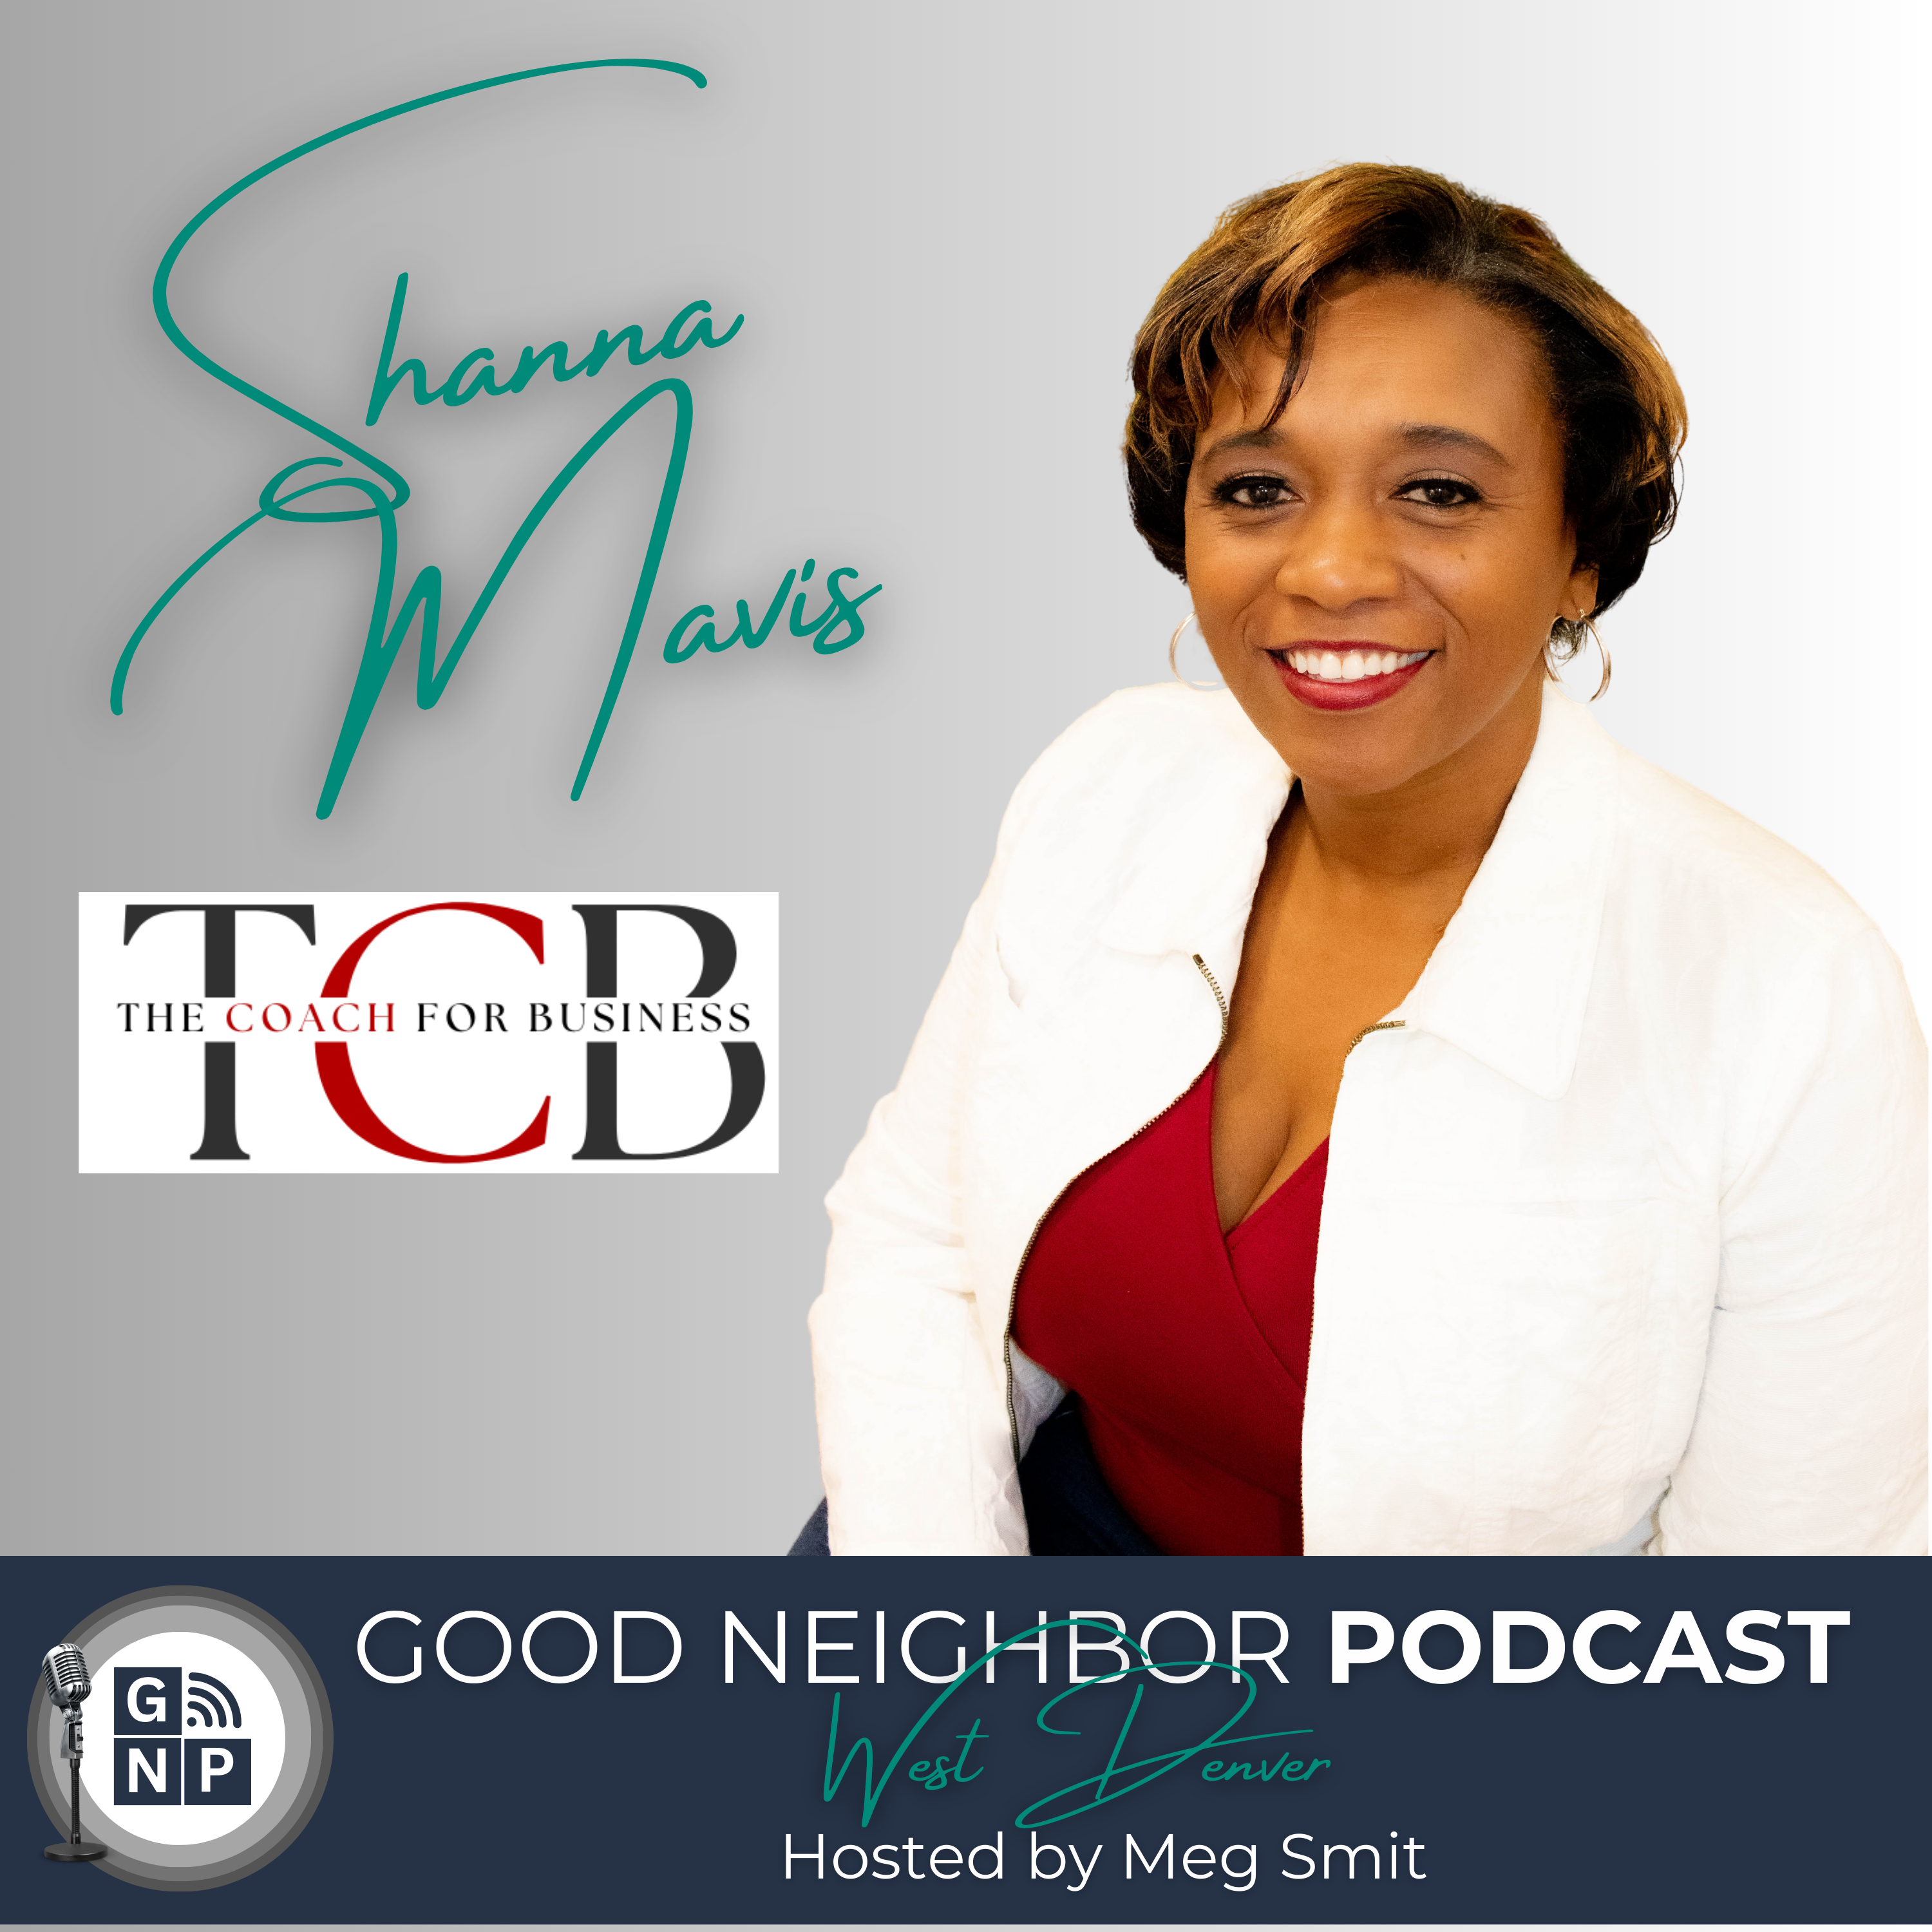 EP #74: Shanna Mavis of The Coach for Business